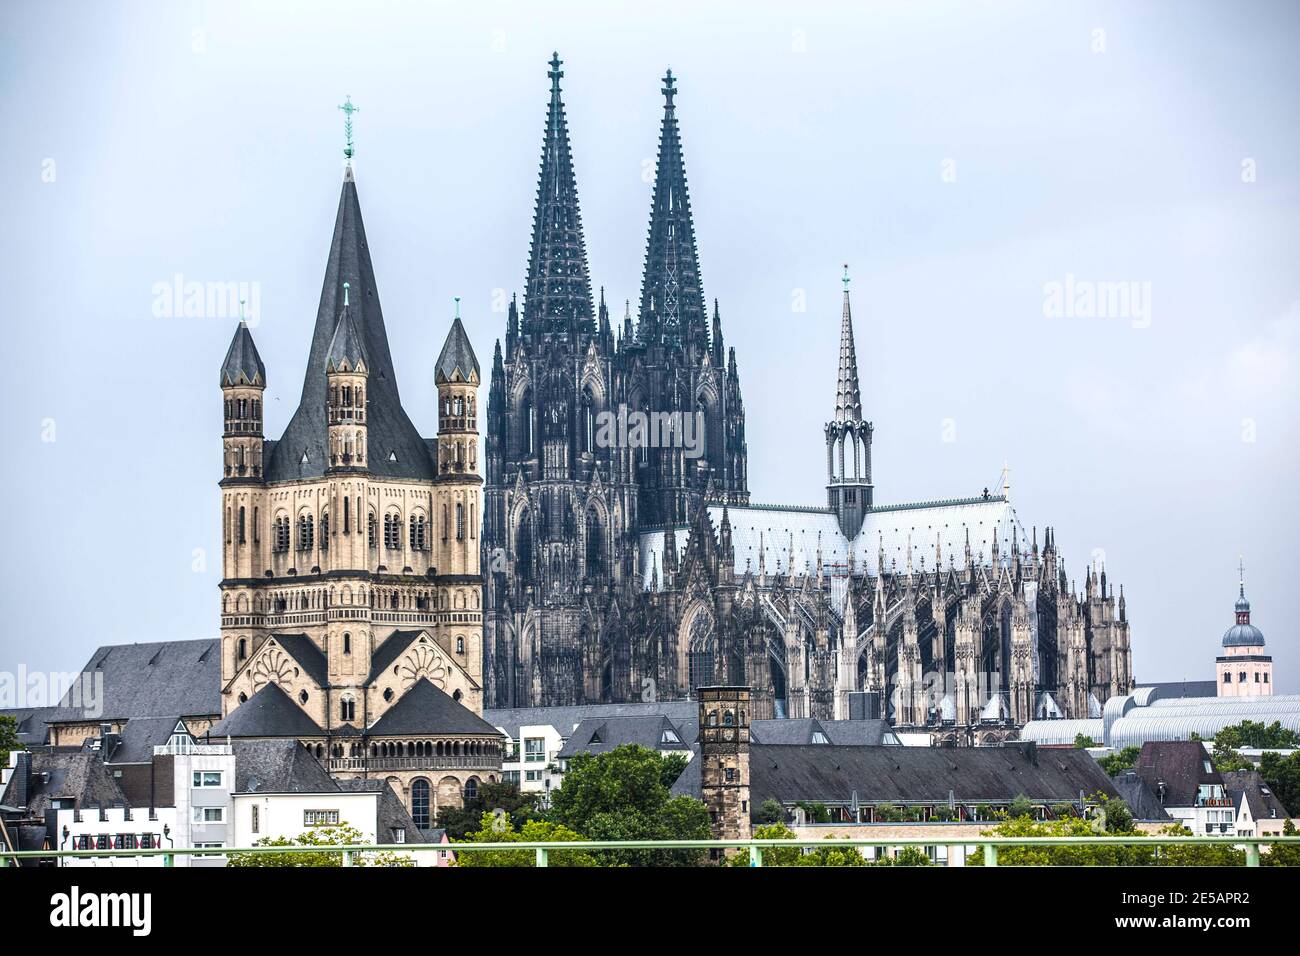 Der Kölner Dom von der anderen Rheinseite gesehen mit der Kirche Groß St. Martin Links im Vordergrund. Foto Stock